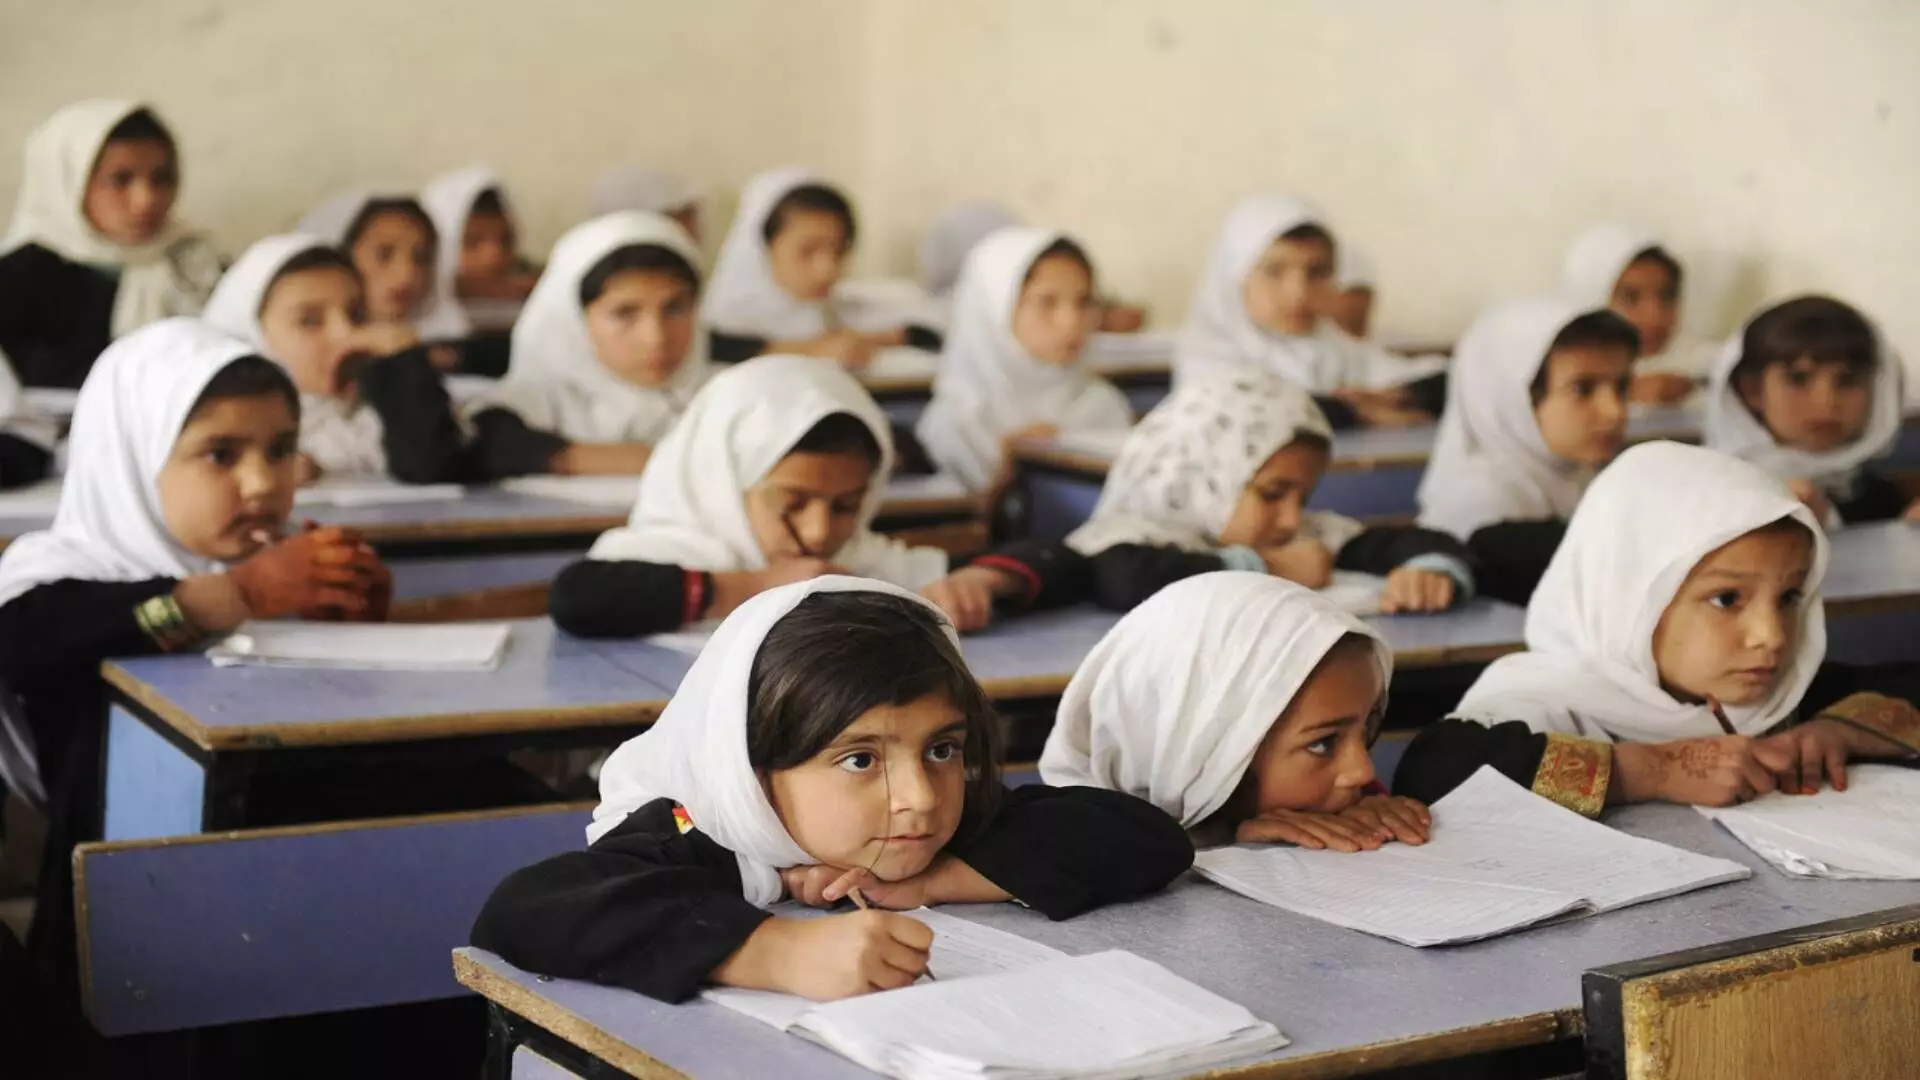 अफगाणिस्तान: आता मुल मुली एकत्र शिक्षण घेणार नाहीत, शिक्षण मंत्री अब्दुल हक्कानी ची घोषणा